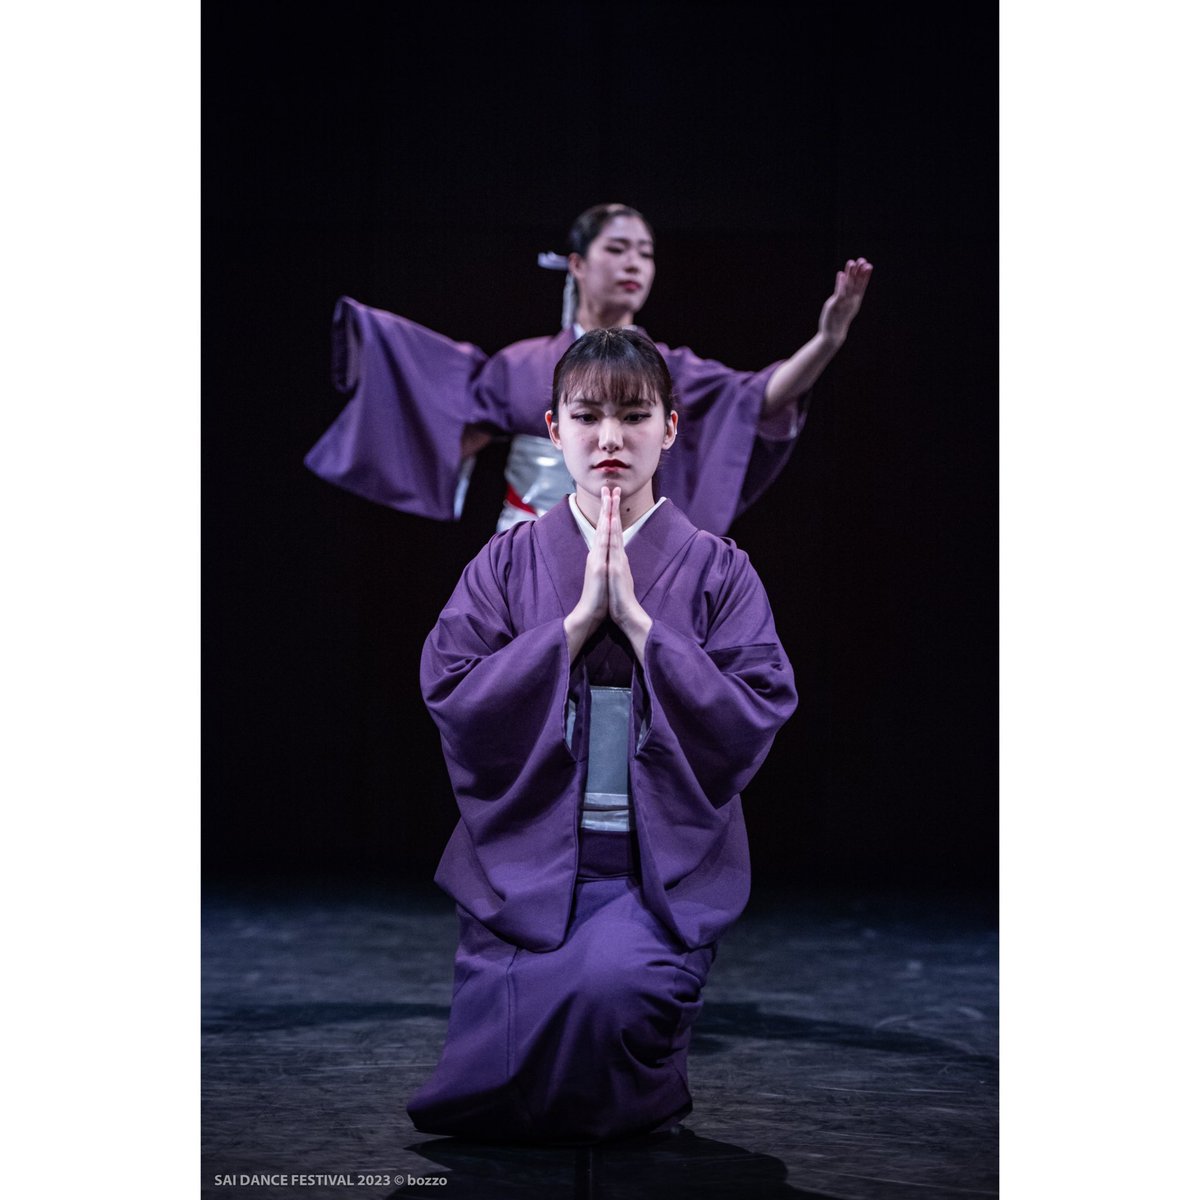 💜
まつり
SAI DANCE FESTIVAL2023
@両国シアターχ

さきちゃんとつくって
さくらとおどった
大好きなひとたちで完成した作品…

お写真いただきました📸
いつもありがとうございます

photo by bozzo様
.
.
#日本舞踊 #創作舞踊
#japan #japanese #traditional 
#theatrearts #kimonf #dance